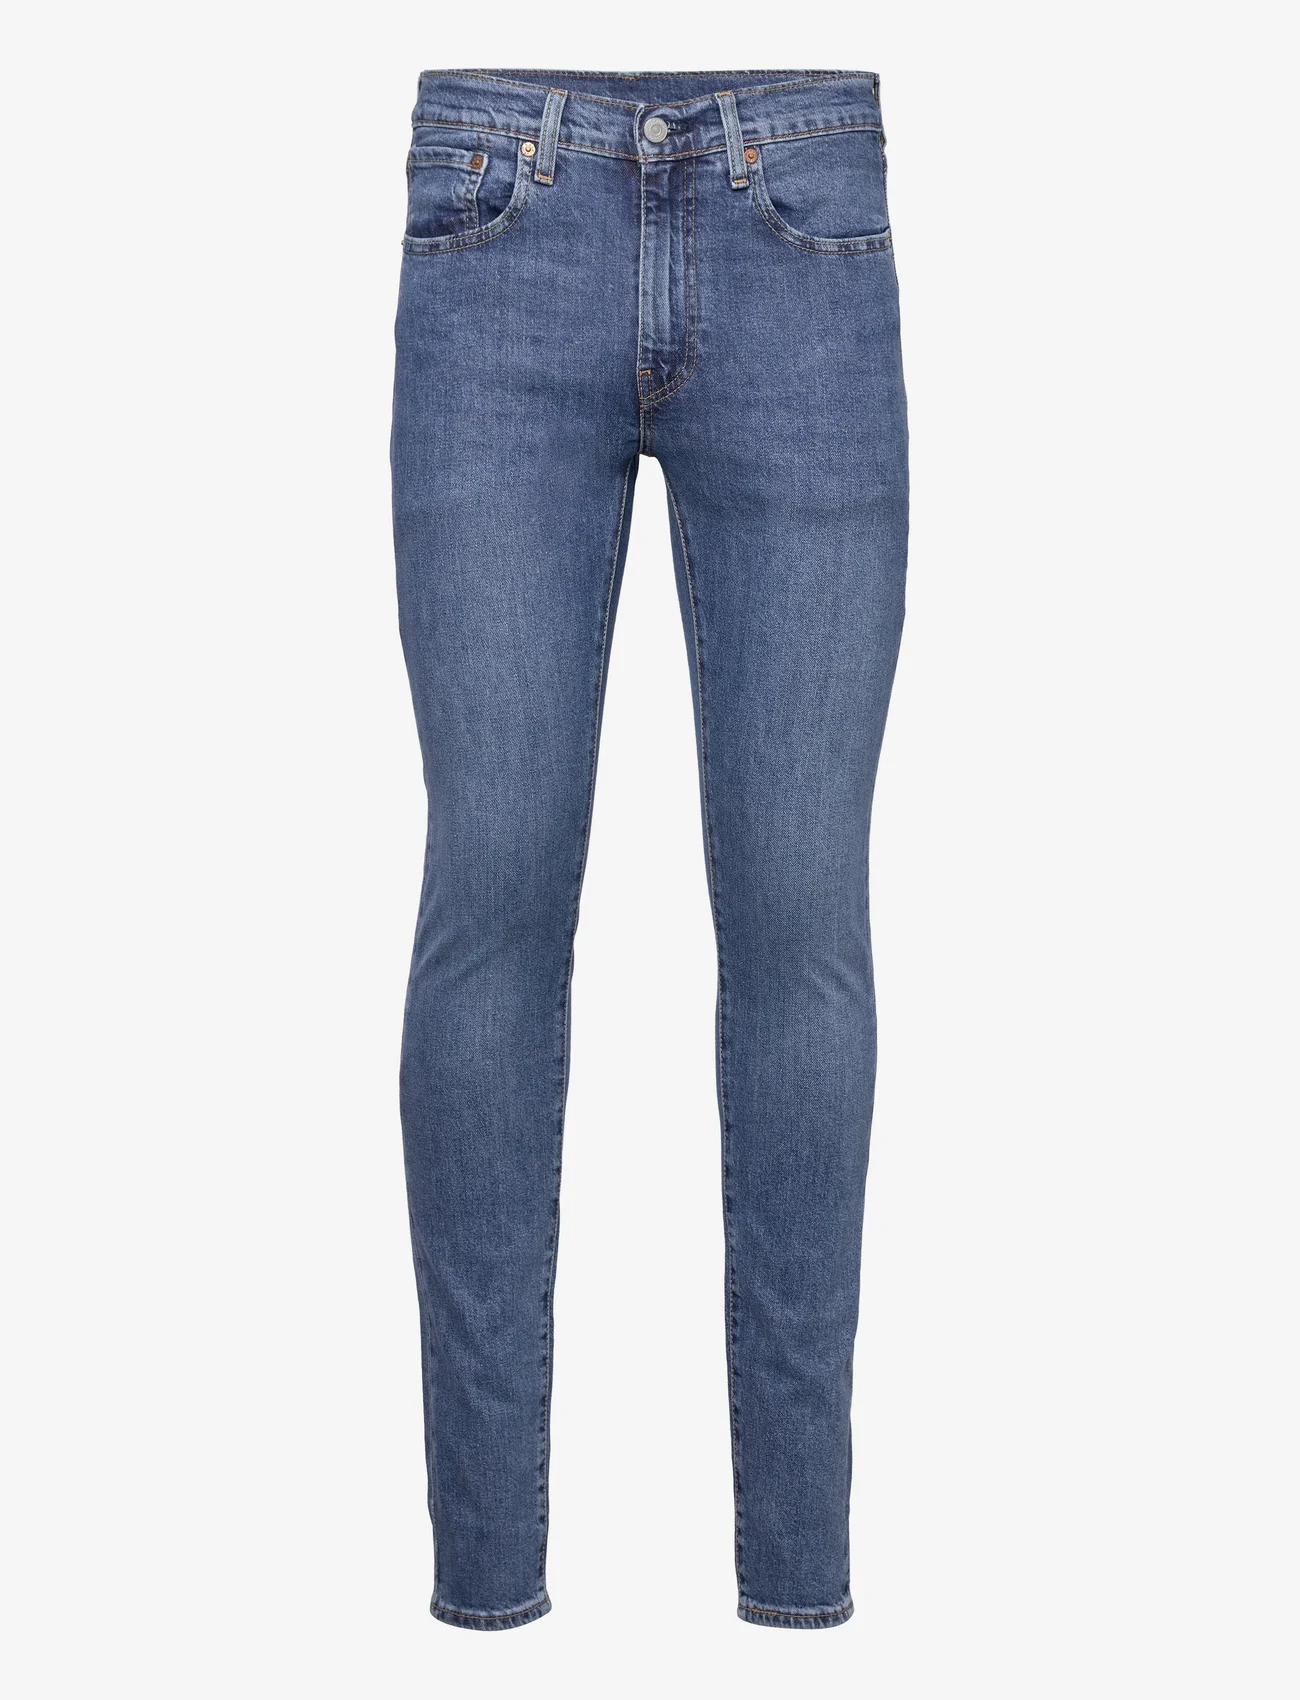 LEVI´S Men - SKINNY TAPER Z1487 MEDIUM INDI - skinny jeans - med indigo - worn in - 0